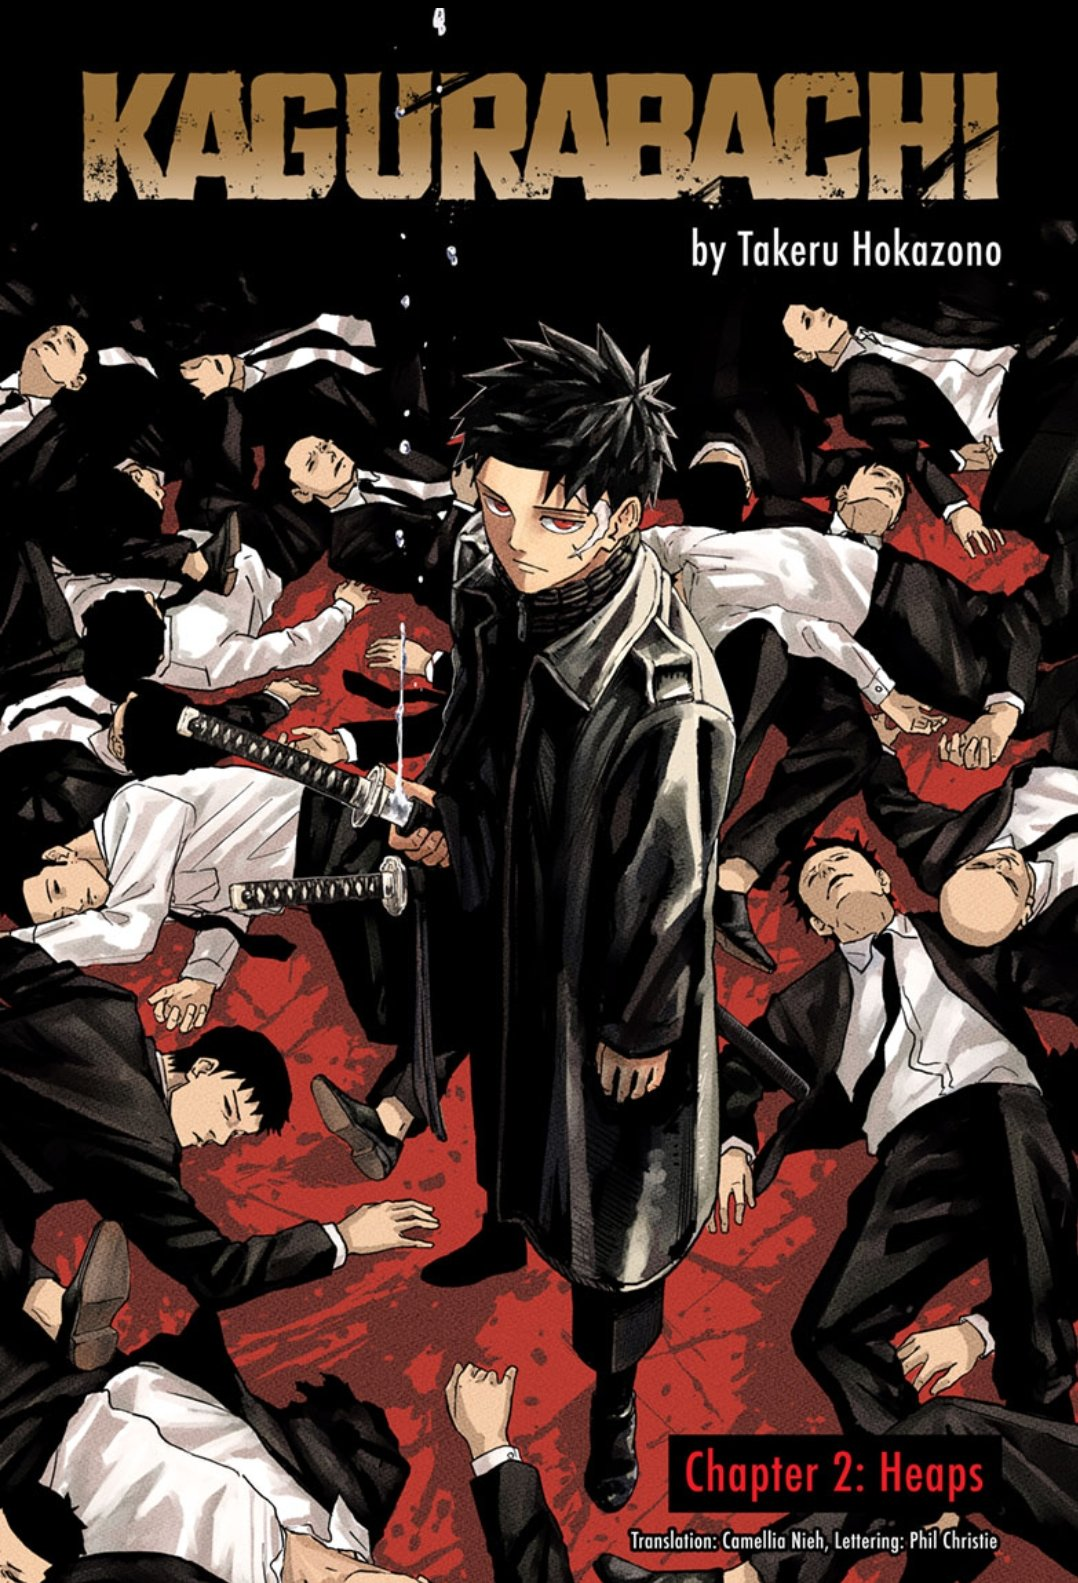 Kagurabachi manga color page